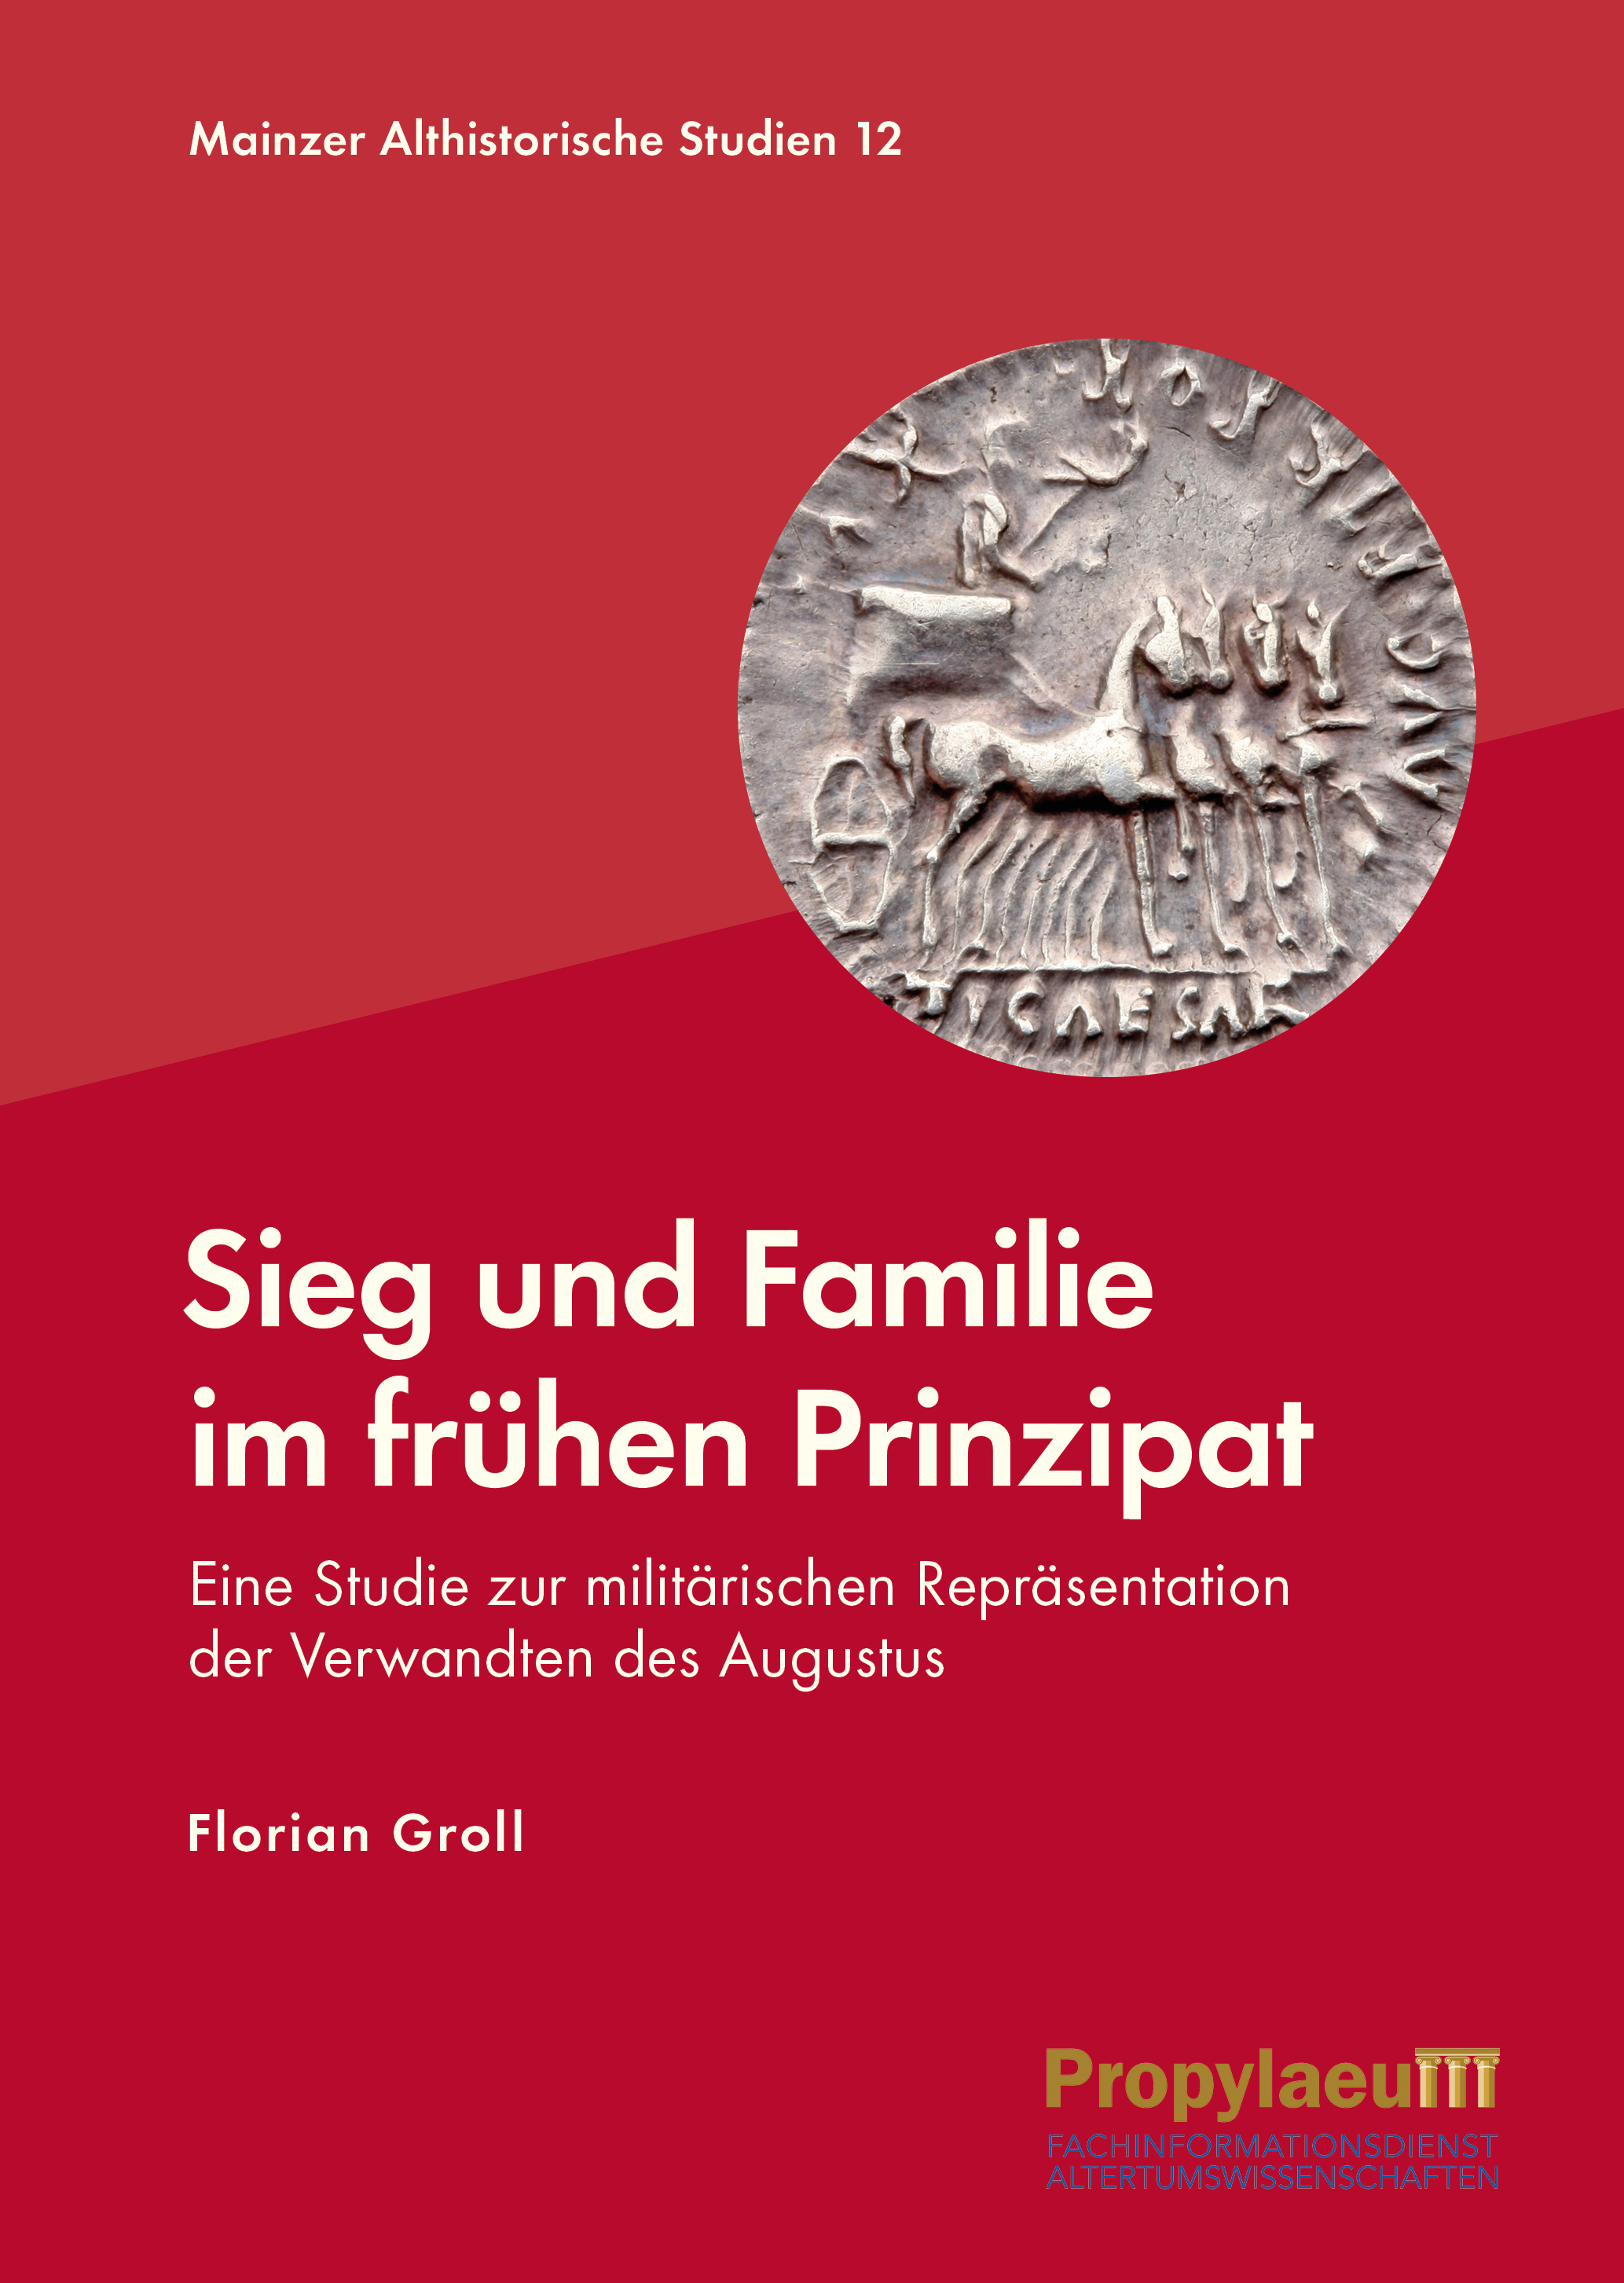 More information about 'Sieg und Familie im frühen Prinzipat'